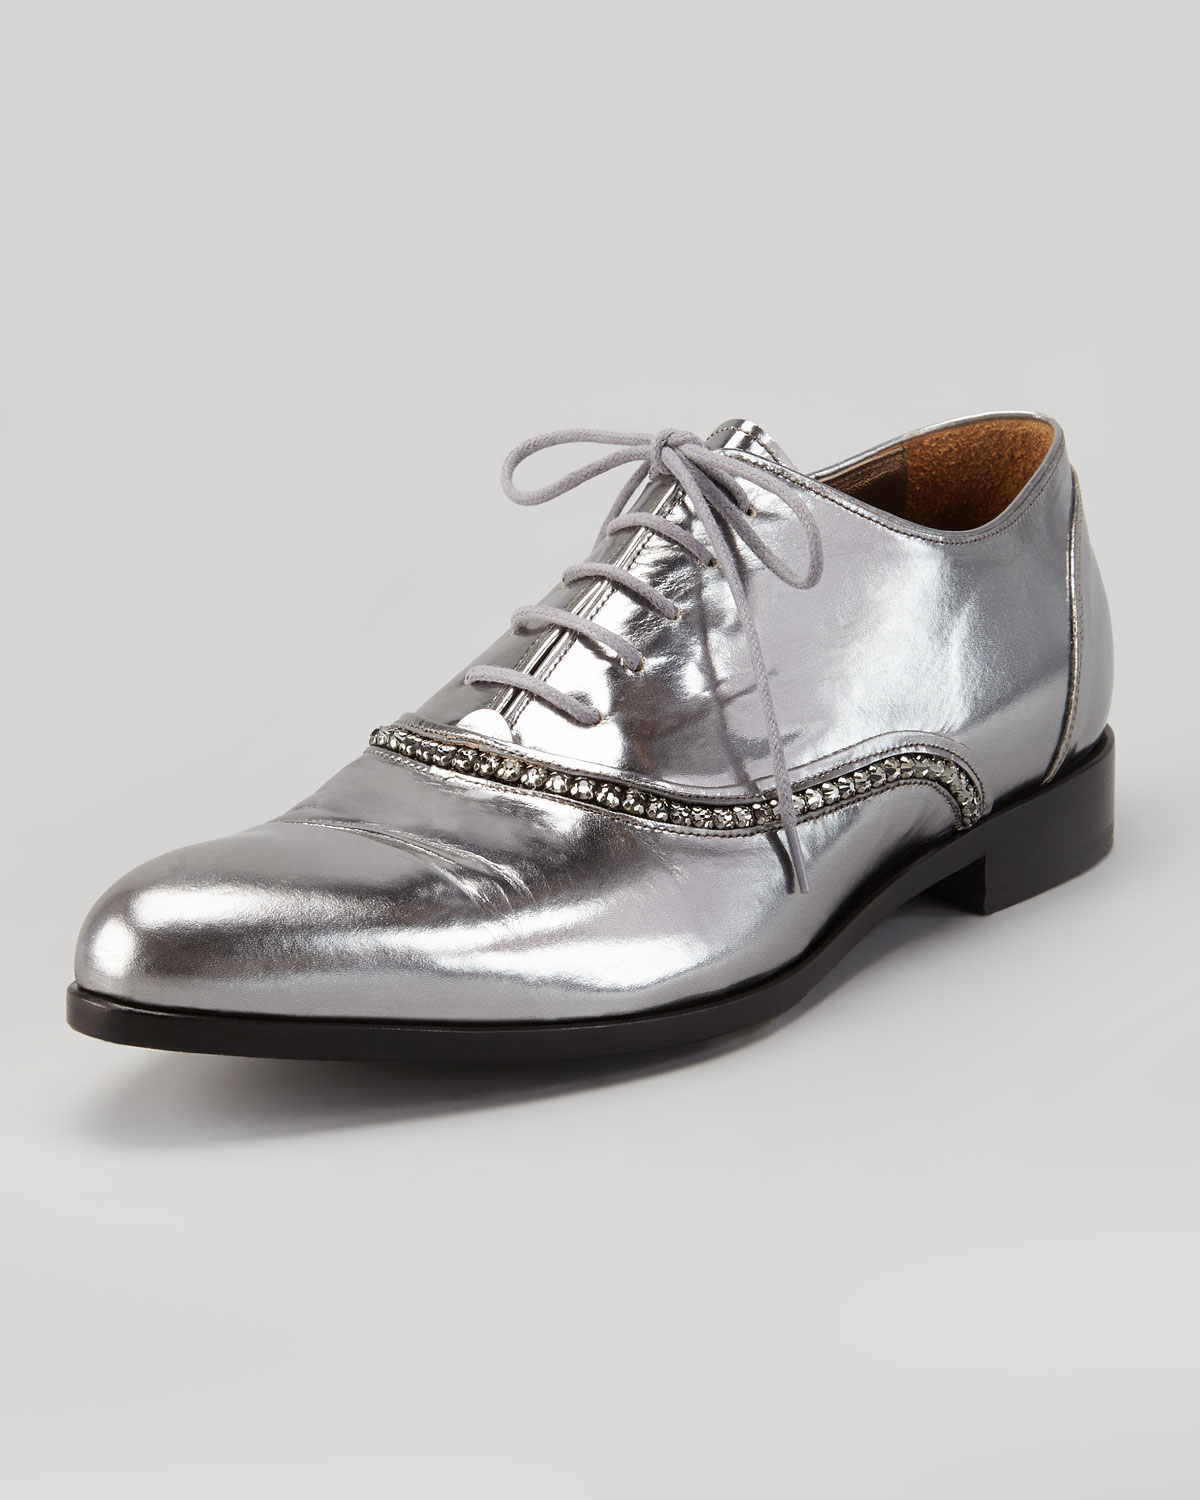 silver metallic dress shoes